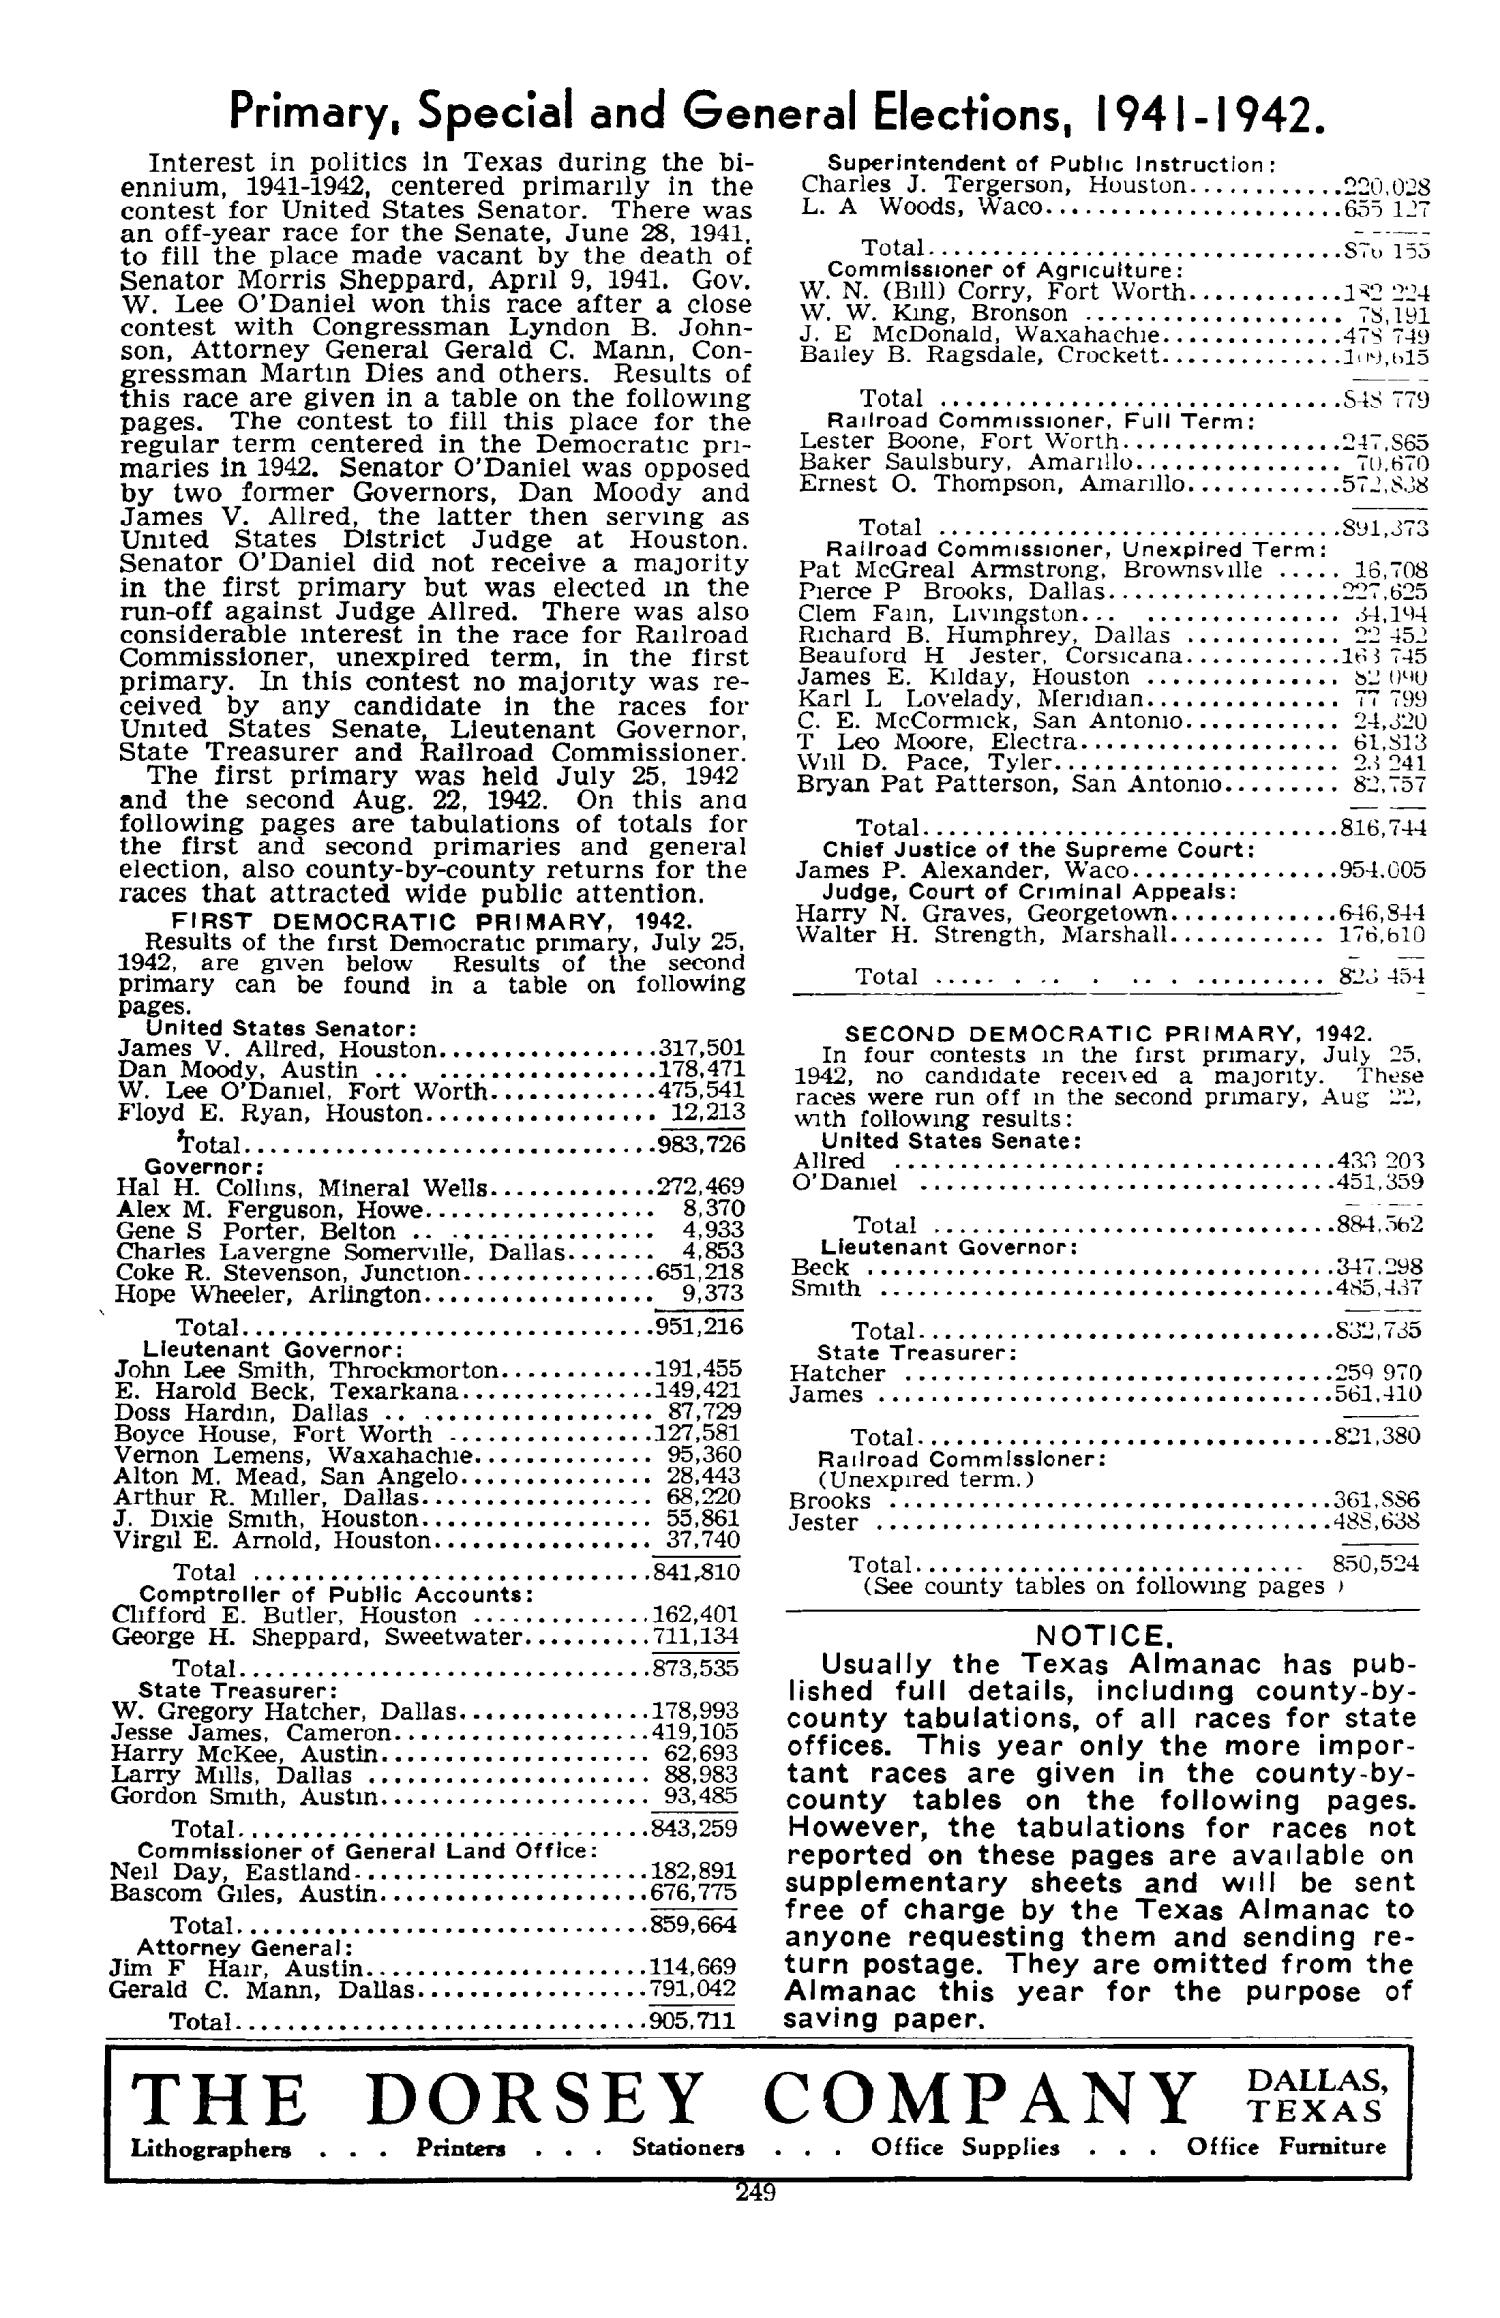 Texas Almanac, 1943-1944
                                                
                                                    249
                                                